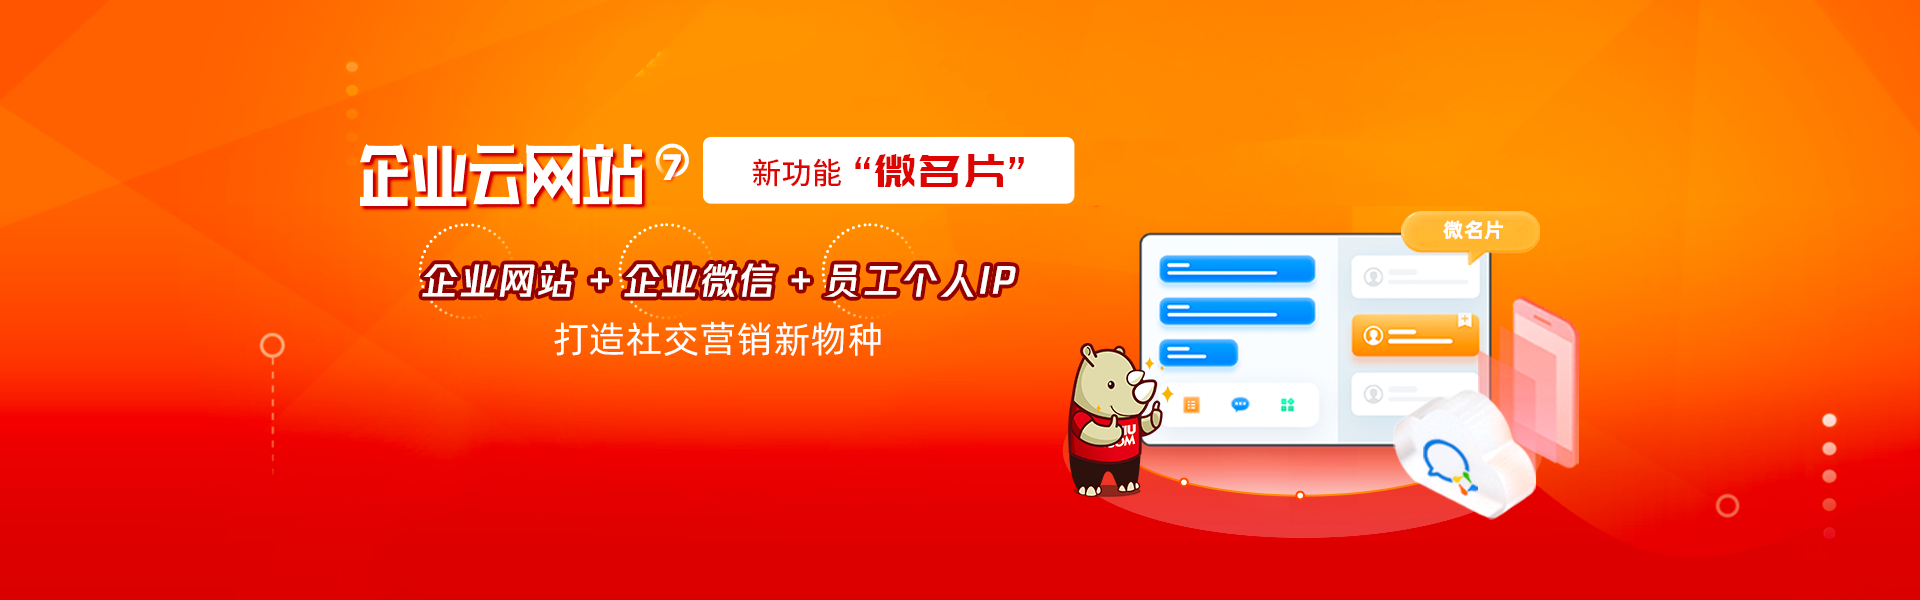 新葡亰8883ent企业云网站独创「企业官网+微名片」，社交营销新利器